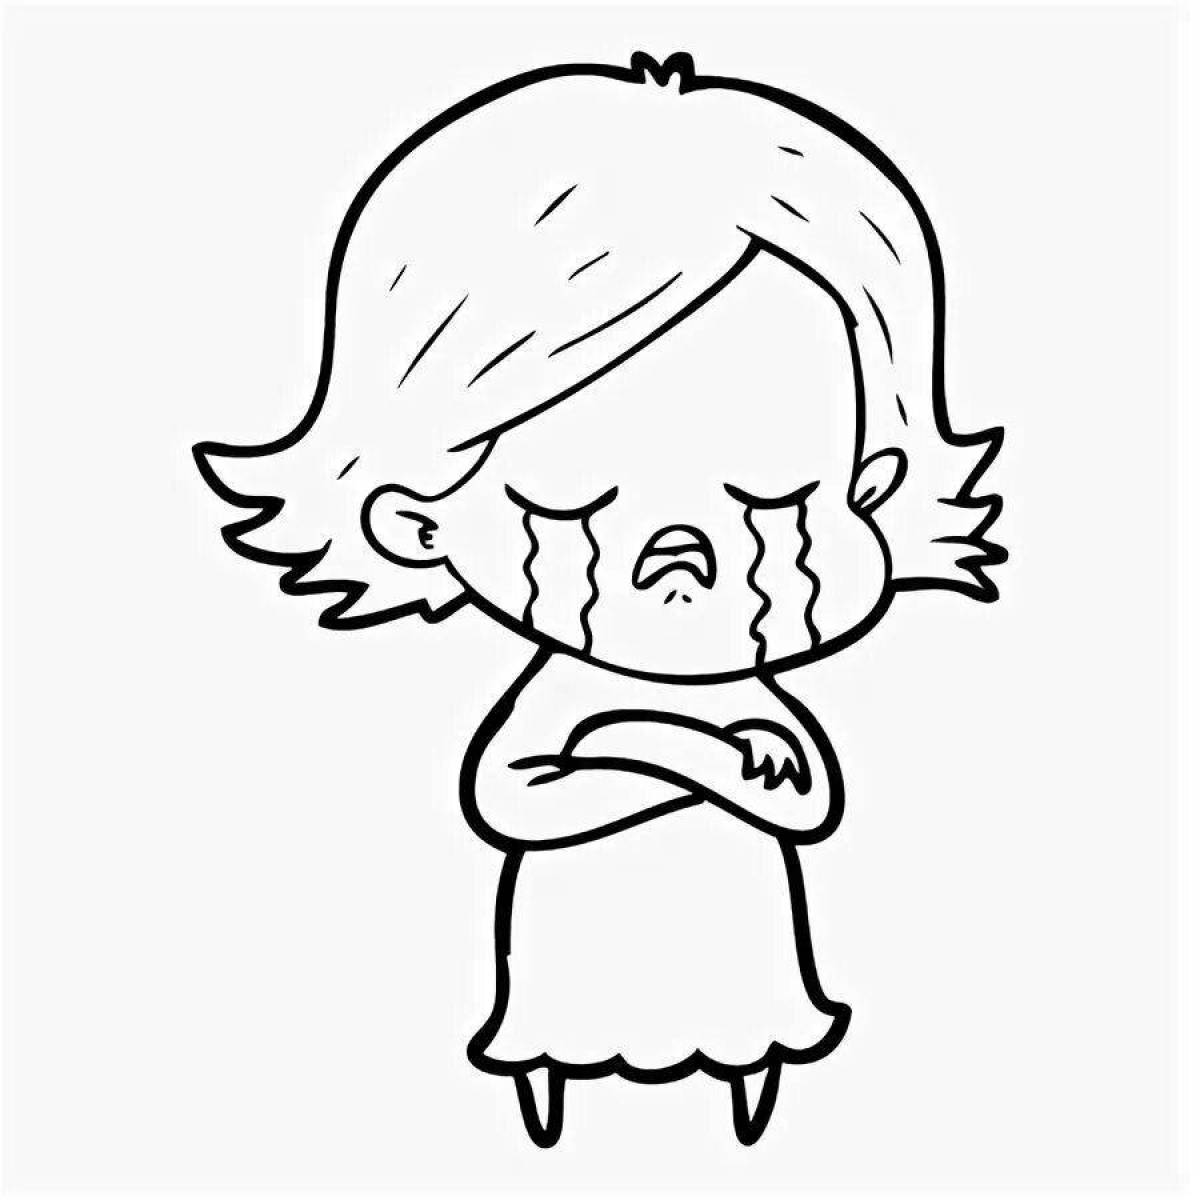 Crying crying girl